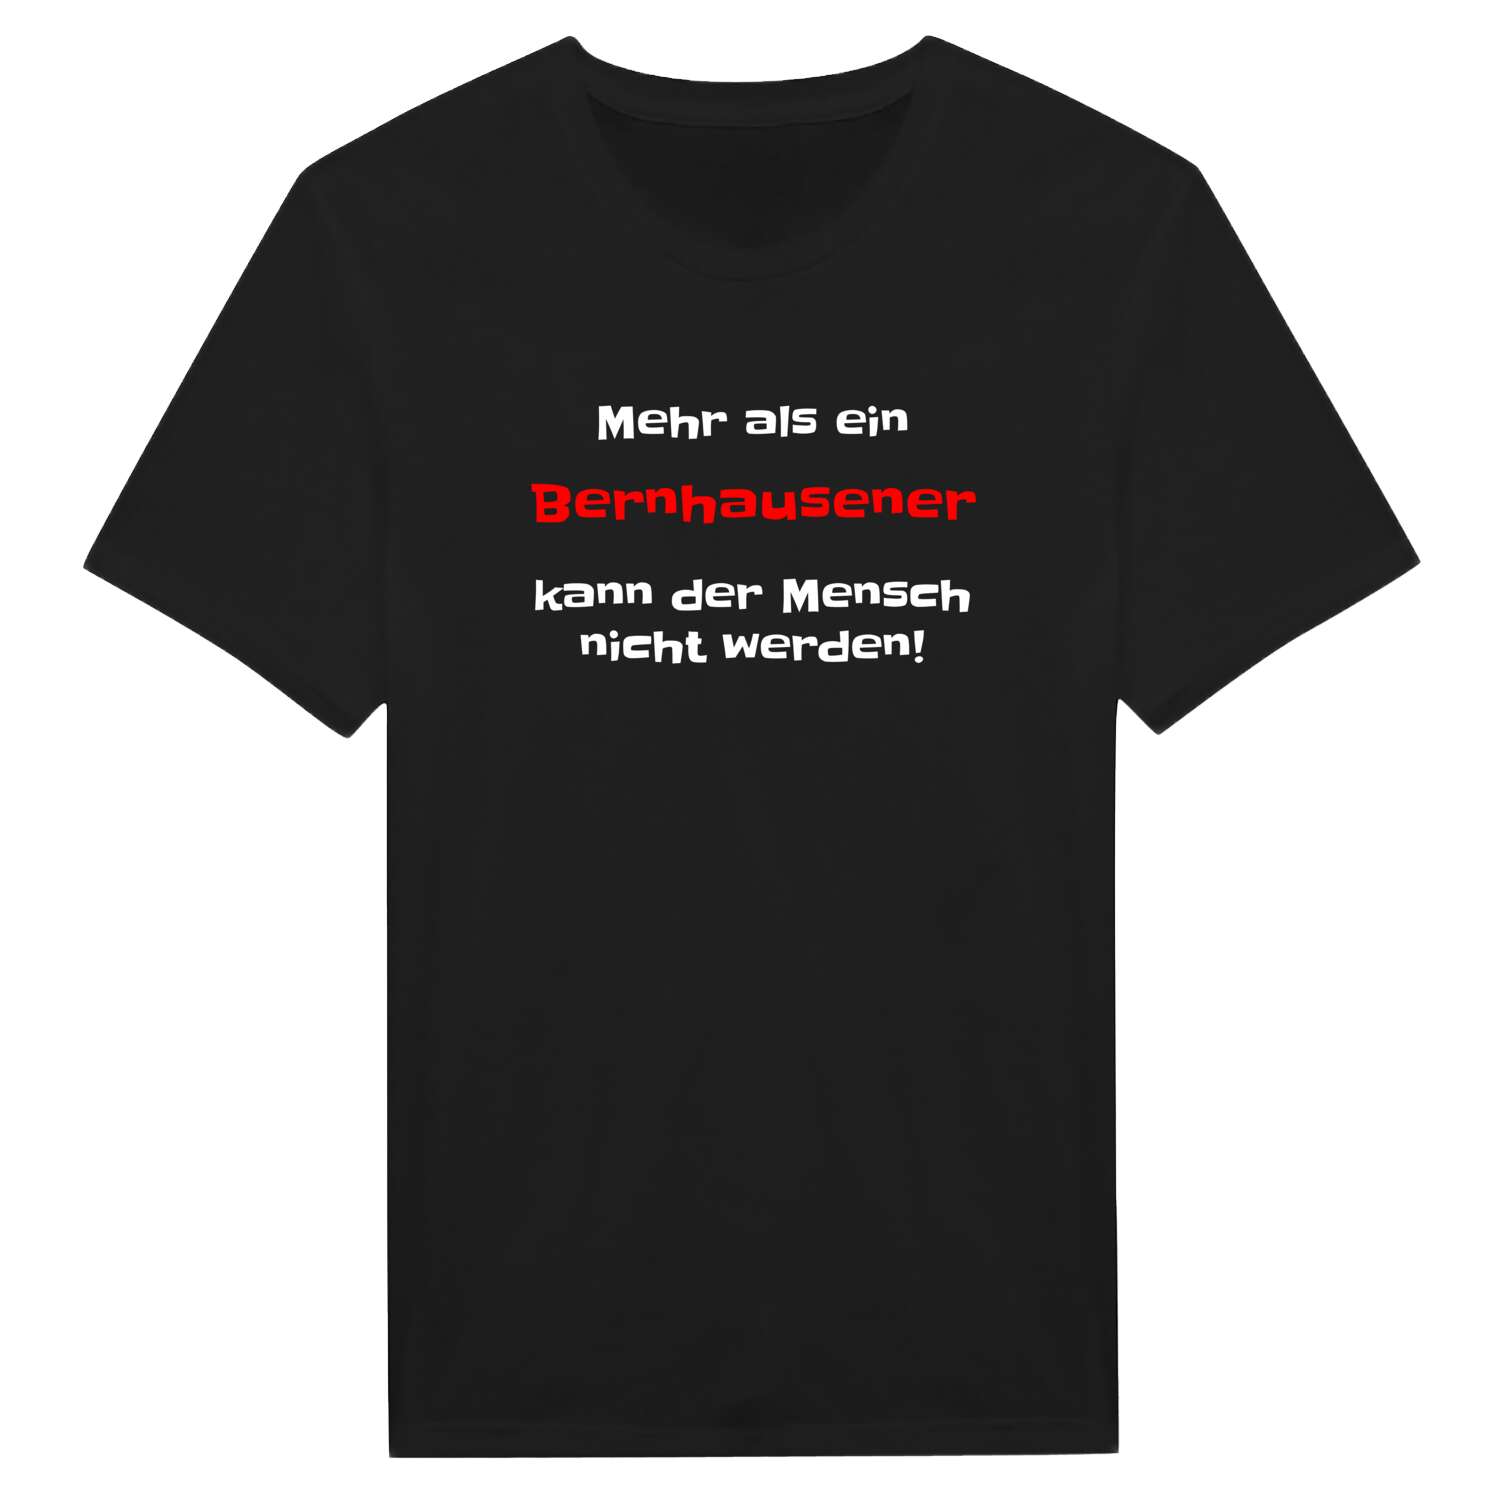 Bernhausen T-Shirt »Mehr als ein«